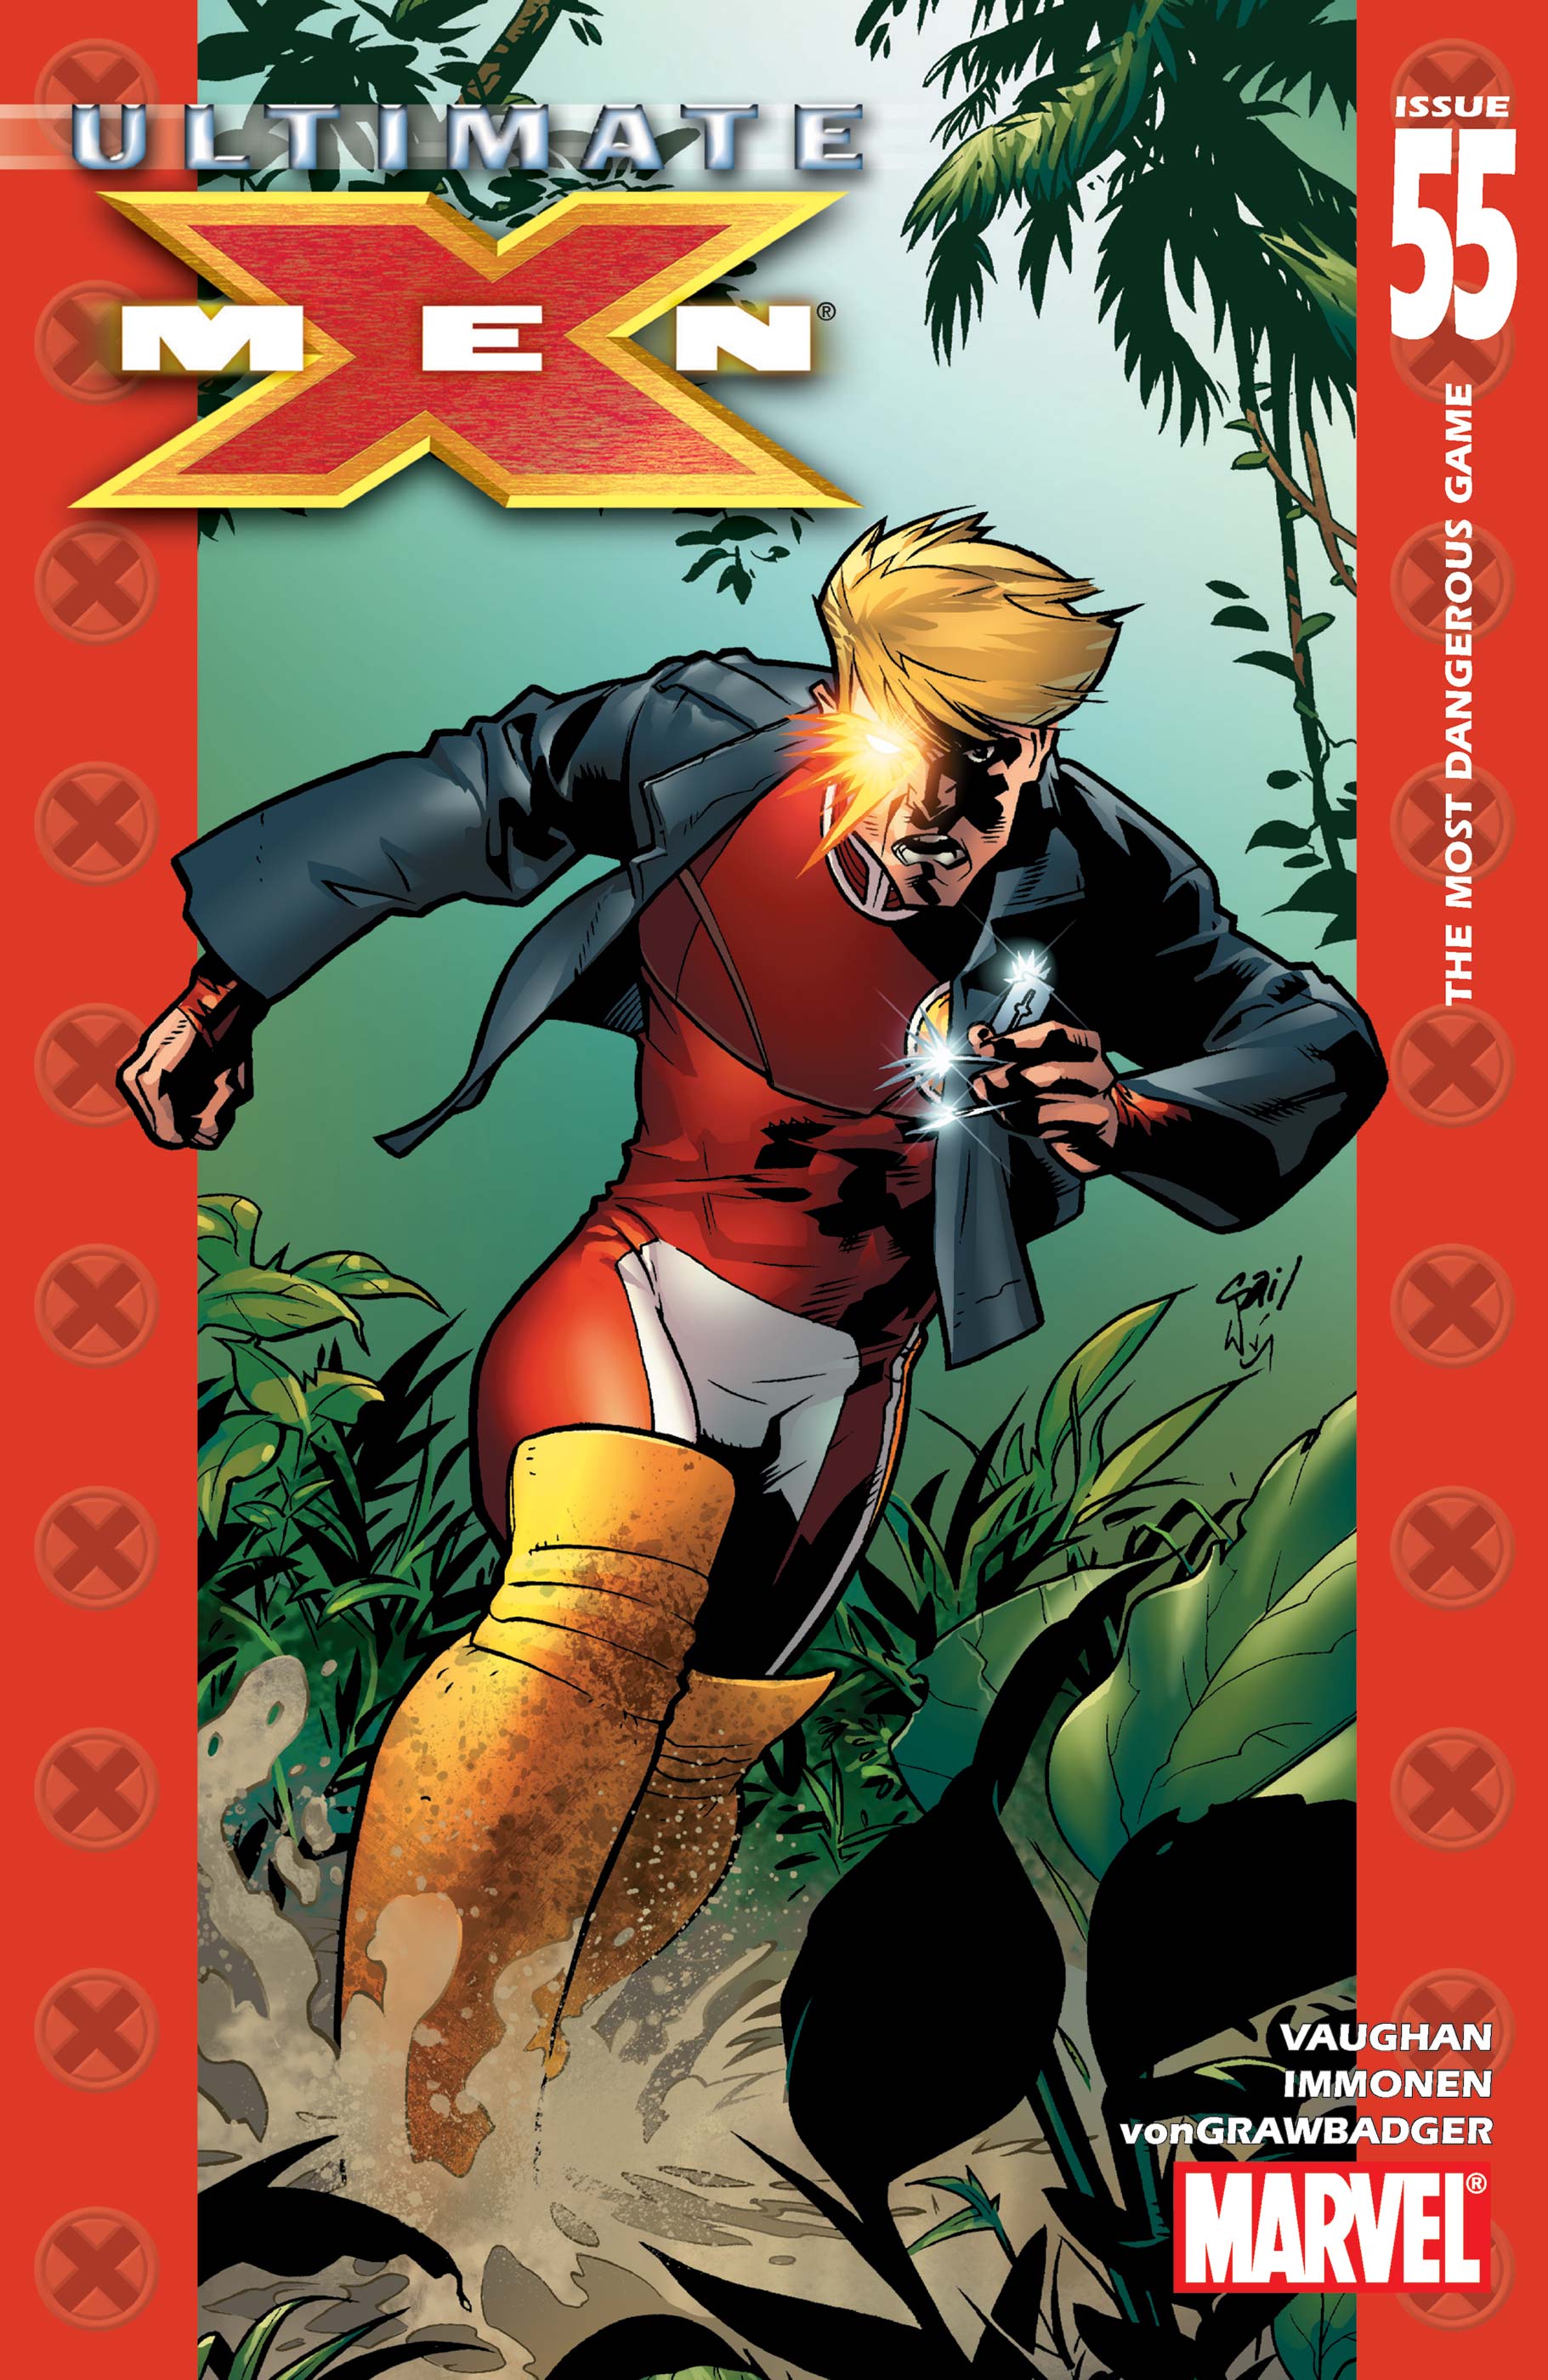 Ultimate X-Men (2001) #55